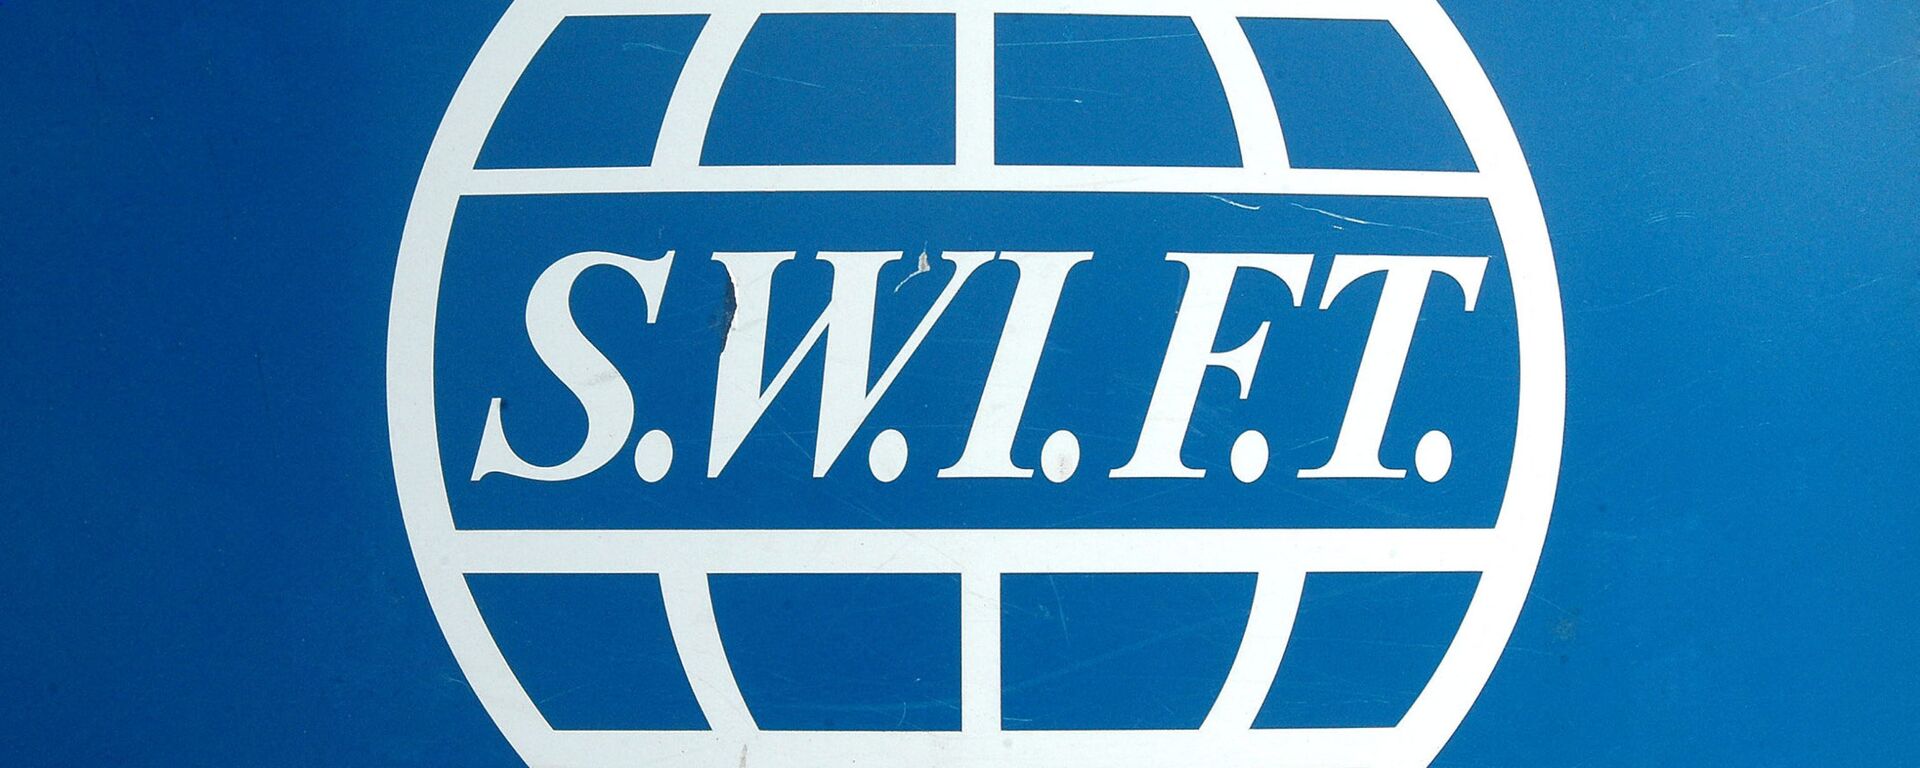 SWIFT системасынын логотиби. Архив - Sputnik Кыргызстан, 1920, 28.02.2022